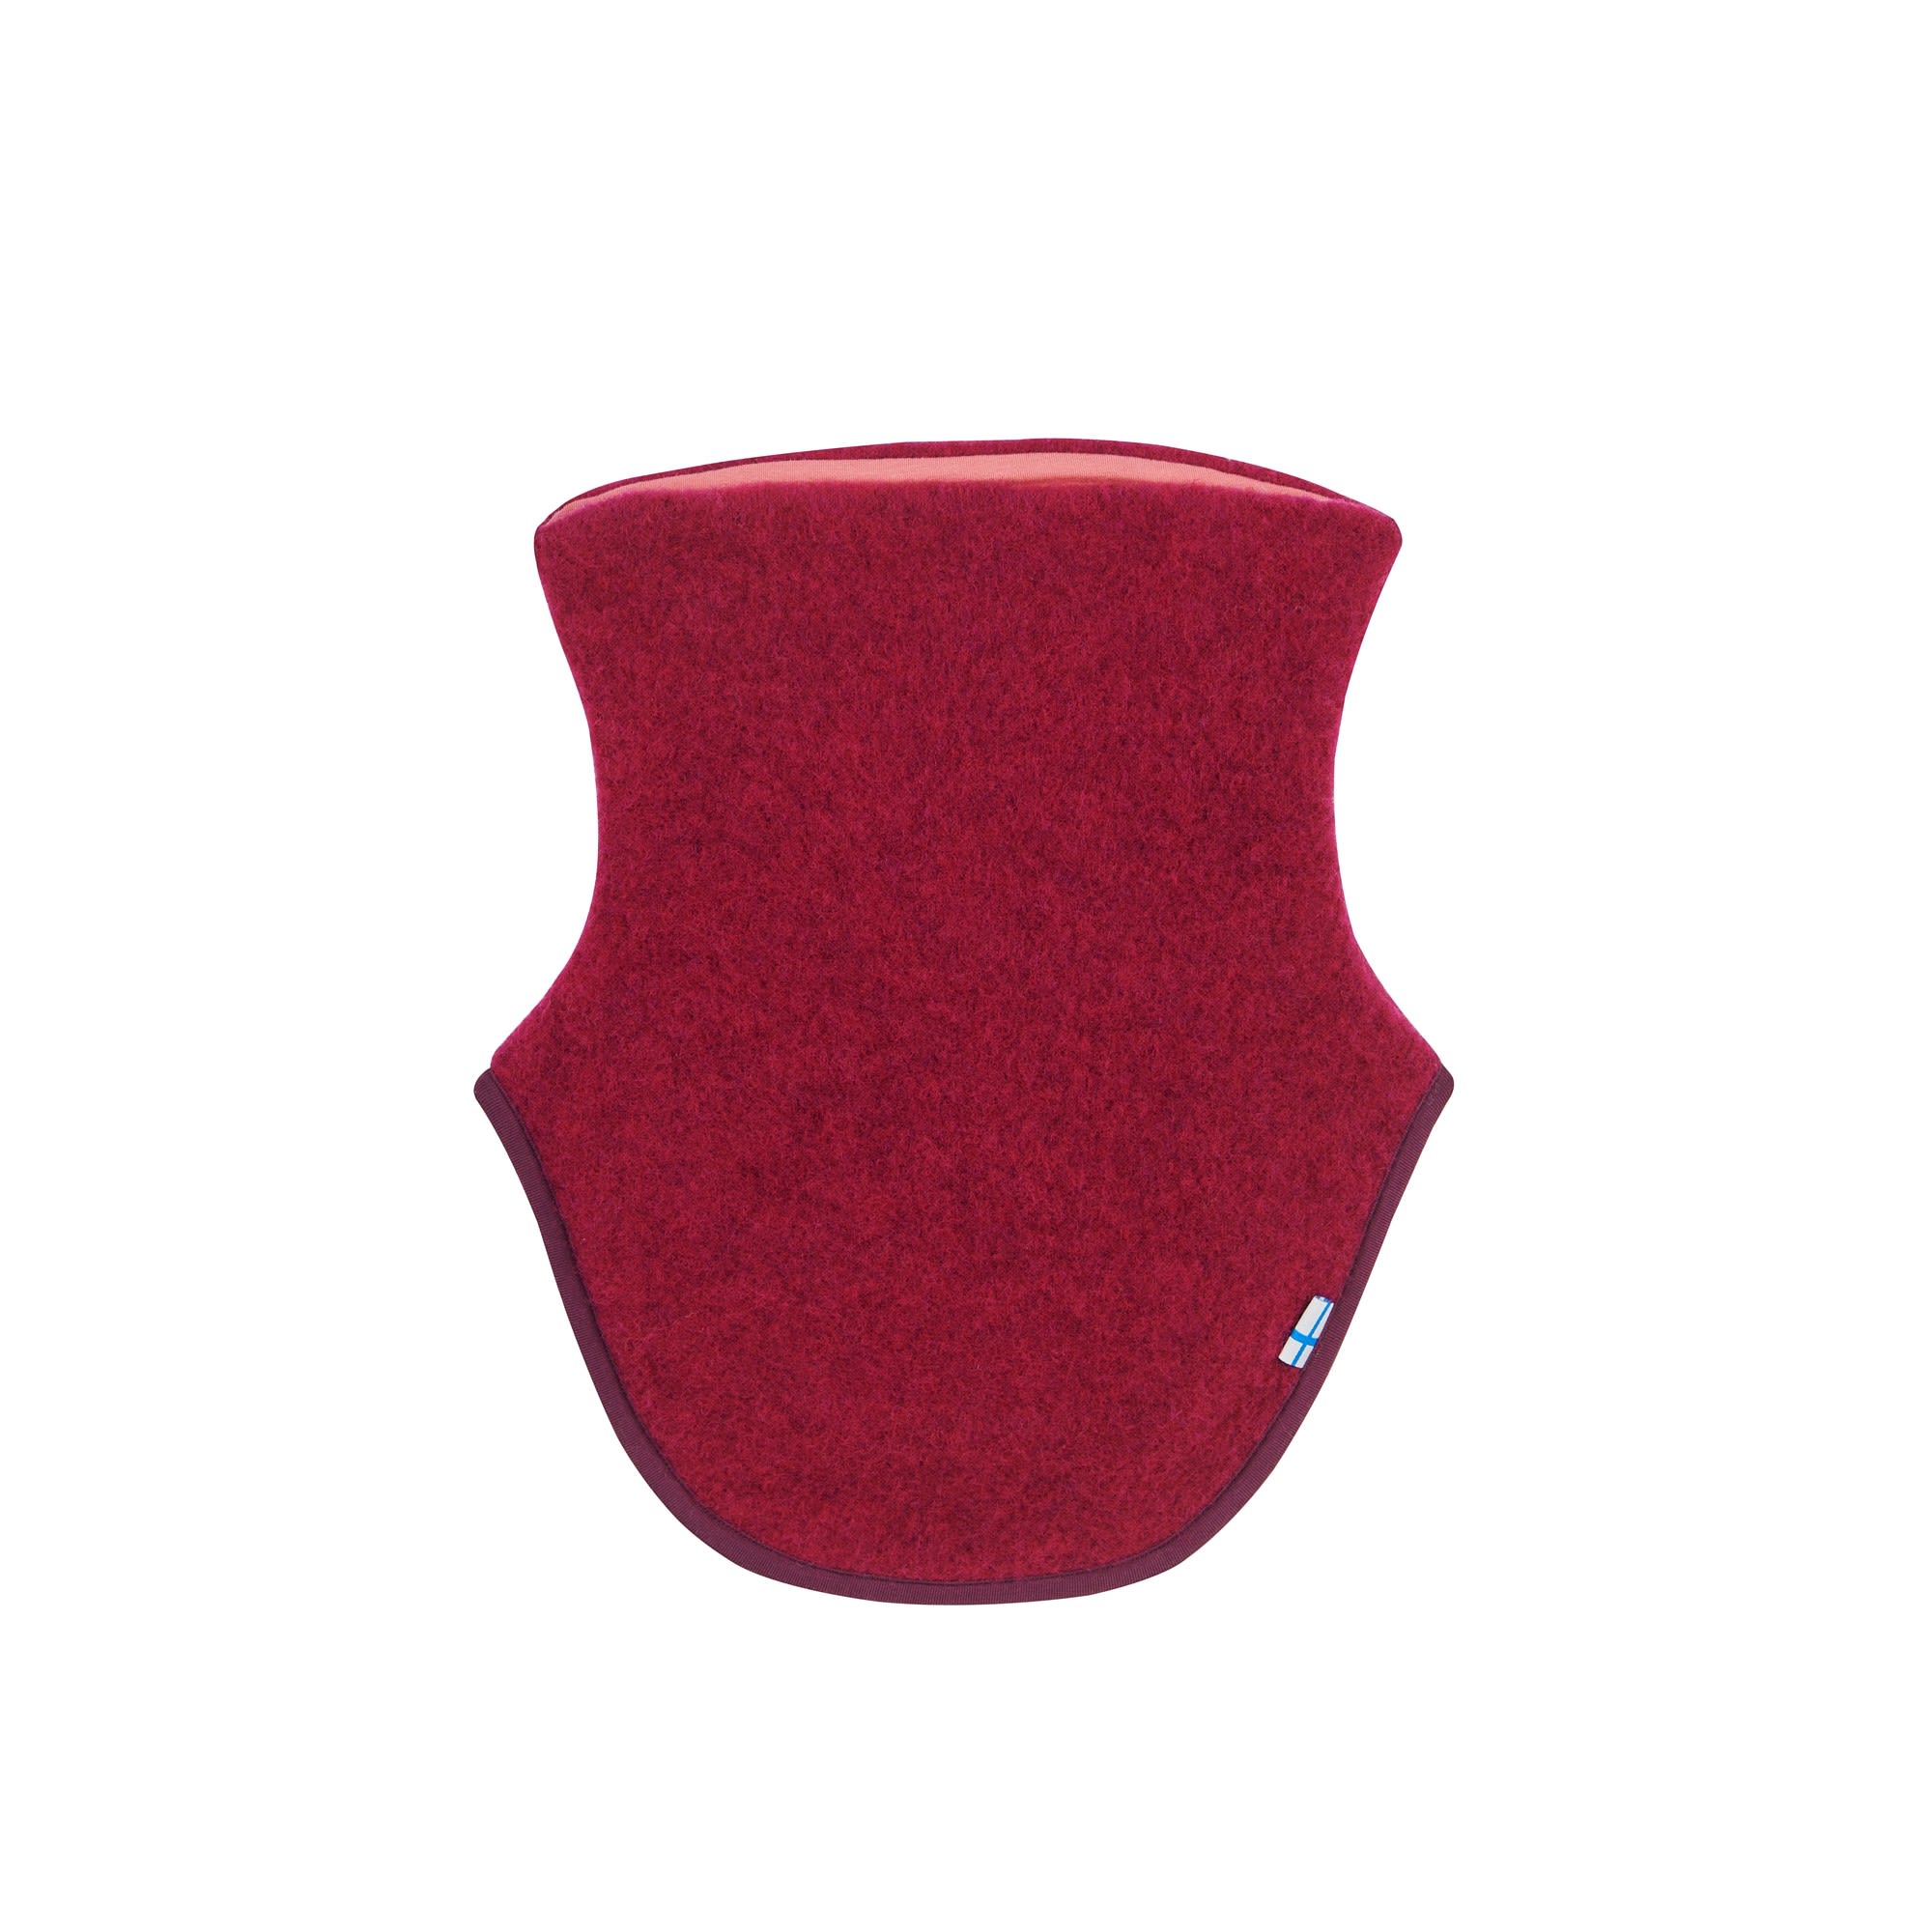 Finkid Kaulus Wool Rot- Schals und Halstcher- Grsse One Size - Farbe Beet Red